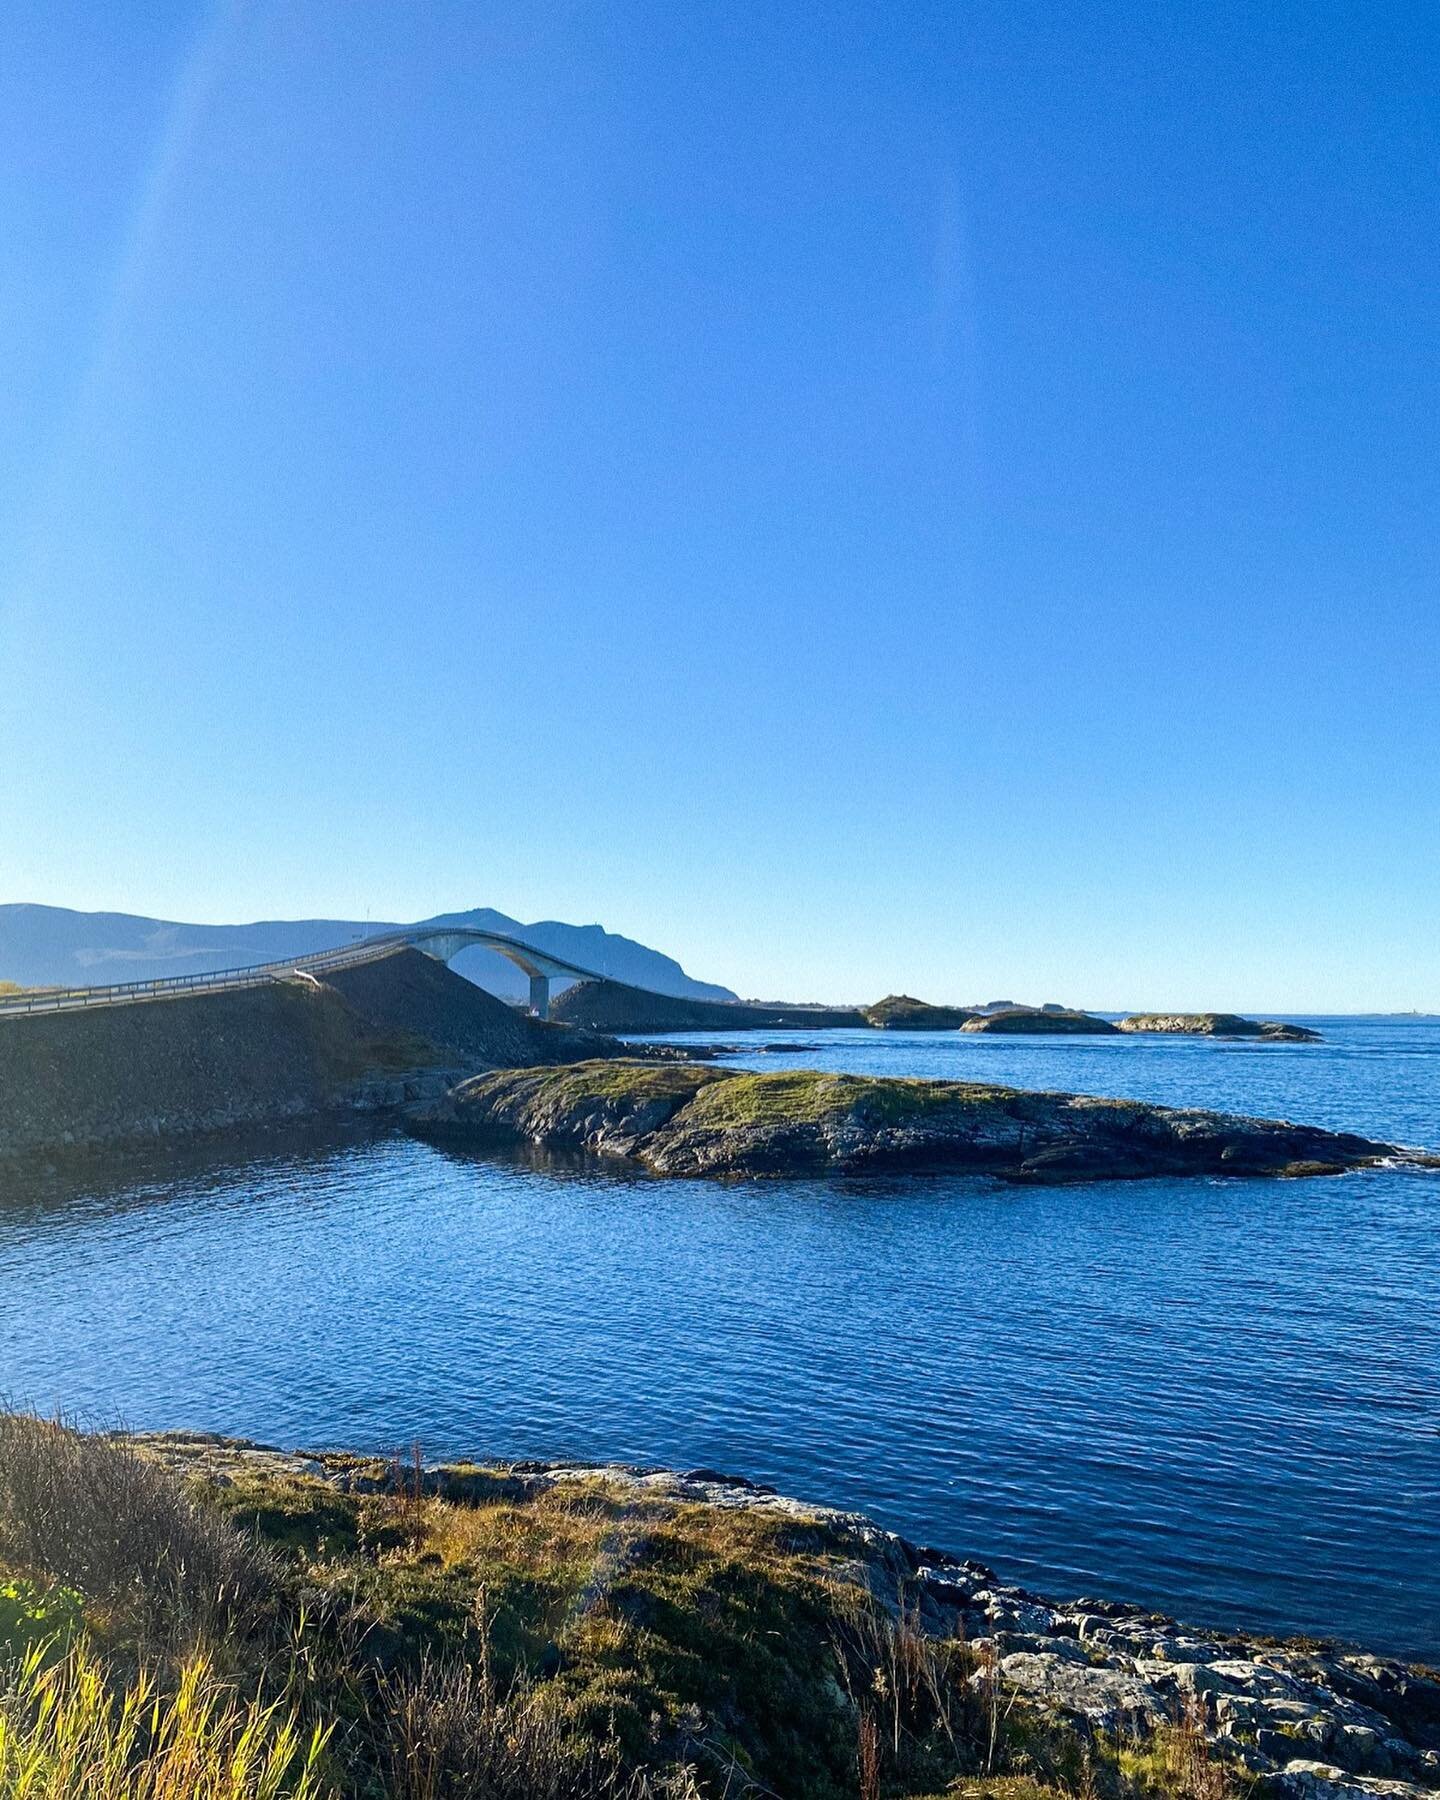 Tout proche de la fameuse route Atlantique se cachent de somptueux paysages 🏞️
.
.
.
.
.
.
#Norway #Norv&egrave;ge #Nature #Paysage #Landcape #Voyage #Travel #Wanderlust #Beautifuldestination #Scandinavie #Norge #Bestofnorway #atlanticroad #travelbl